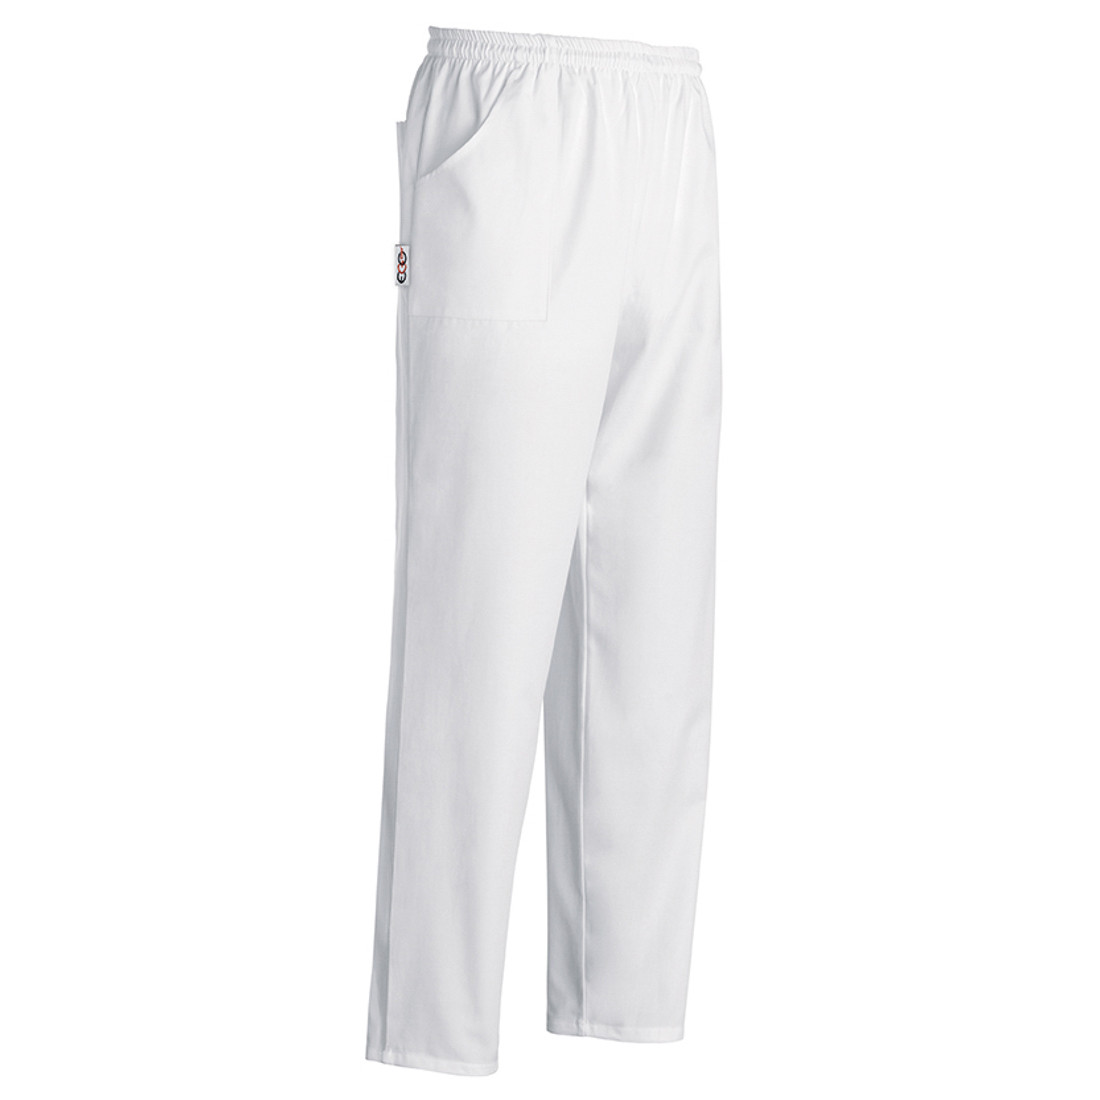 Pantalone Coulisse Pocket - Abbigliamento di protezione